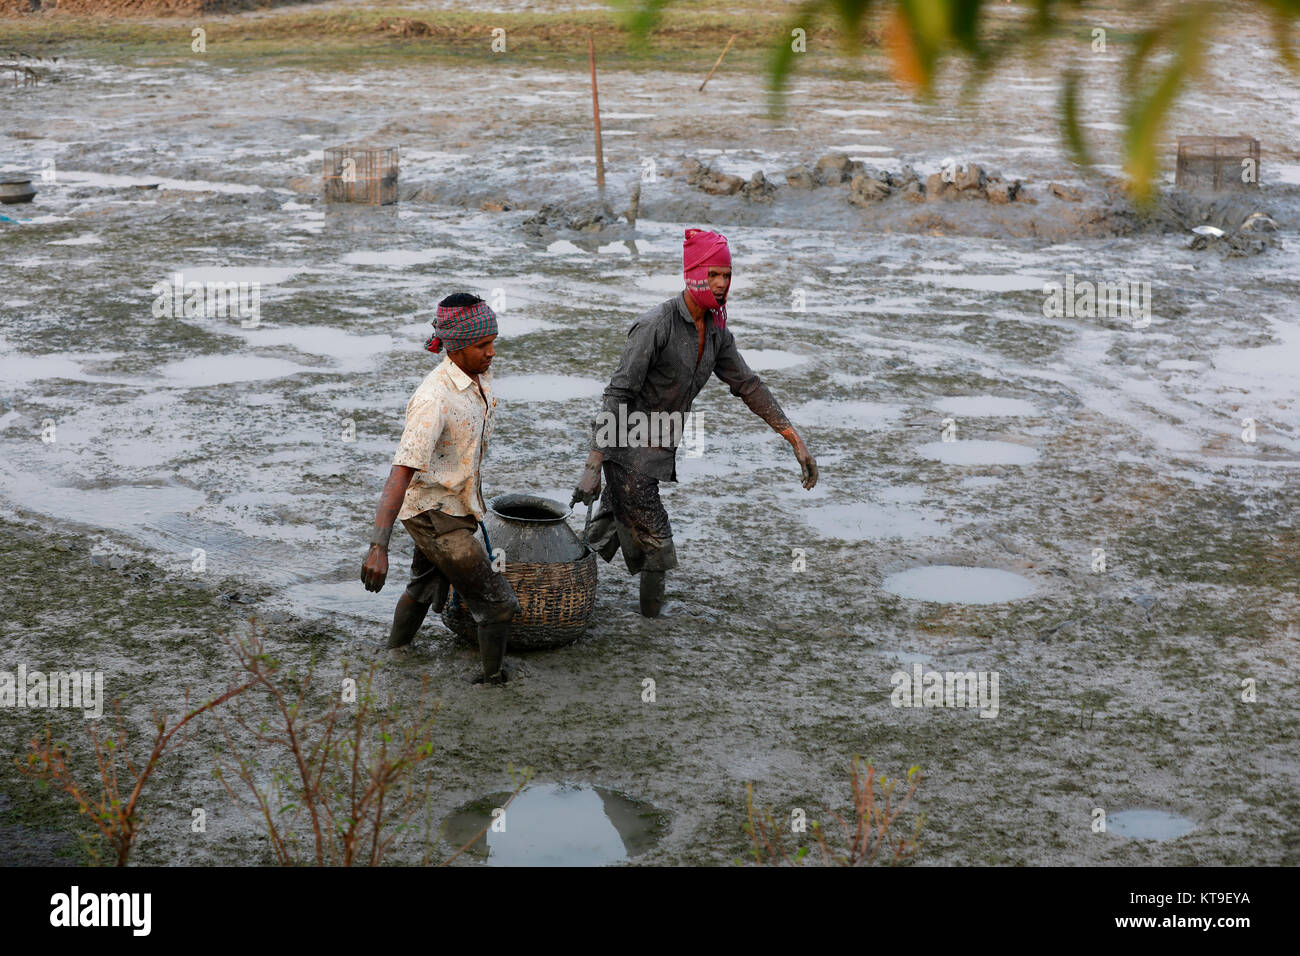 KHULNA, BANGLADESH - le 15 décembre 2017 : Les gens de la pêche dans l'assèchement des rivières, canaux et plans d'eau durant la saison d'hiver est une caractéristique commune i Banque D'Images